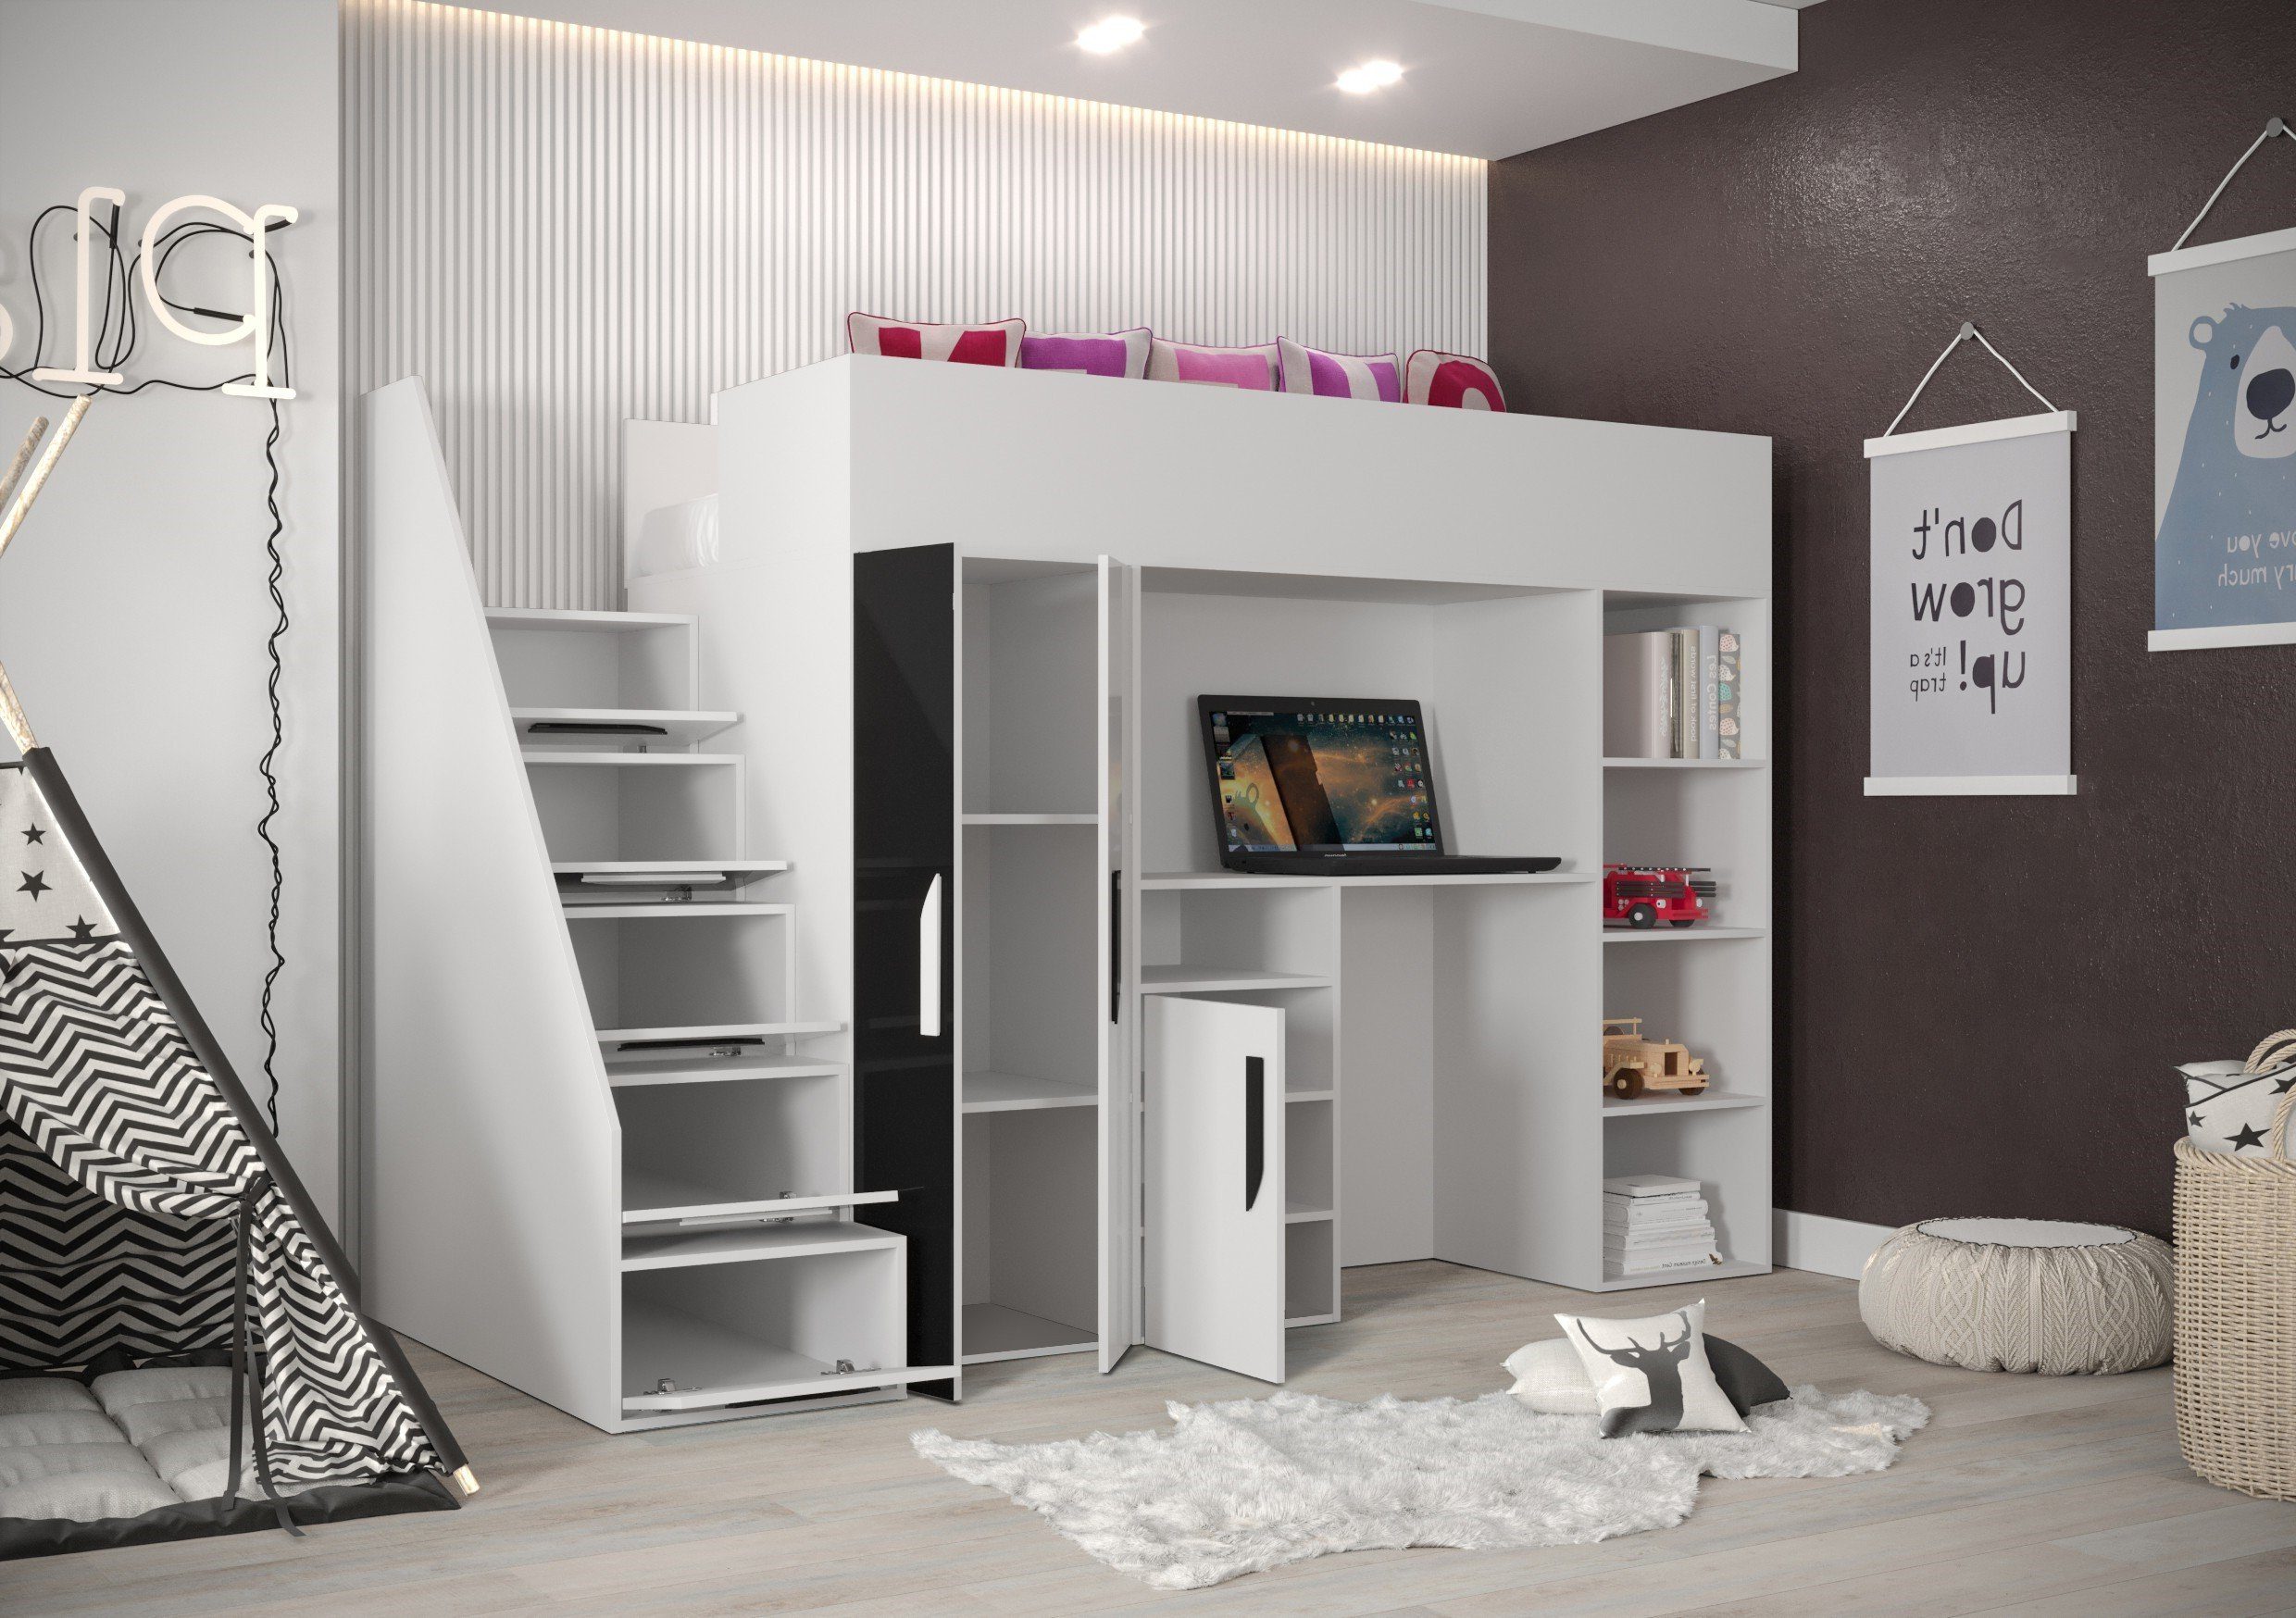 Hochbett Kinderbett Schreibtisch, Home Weiß/Rosa 14, Farbe und Treppe Unique Inkl. PAR Kleiderschrank wählbar